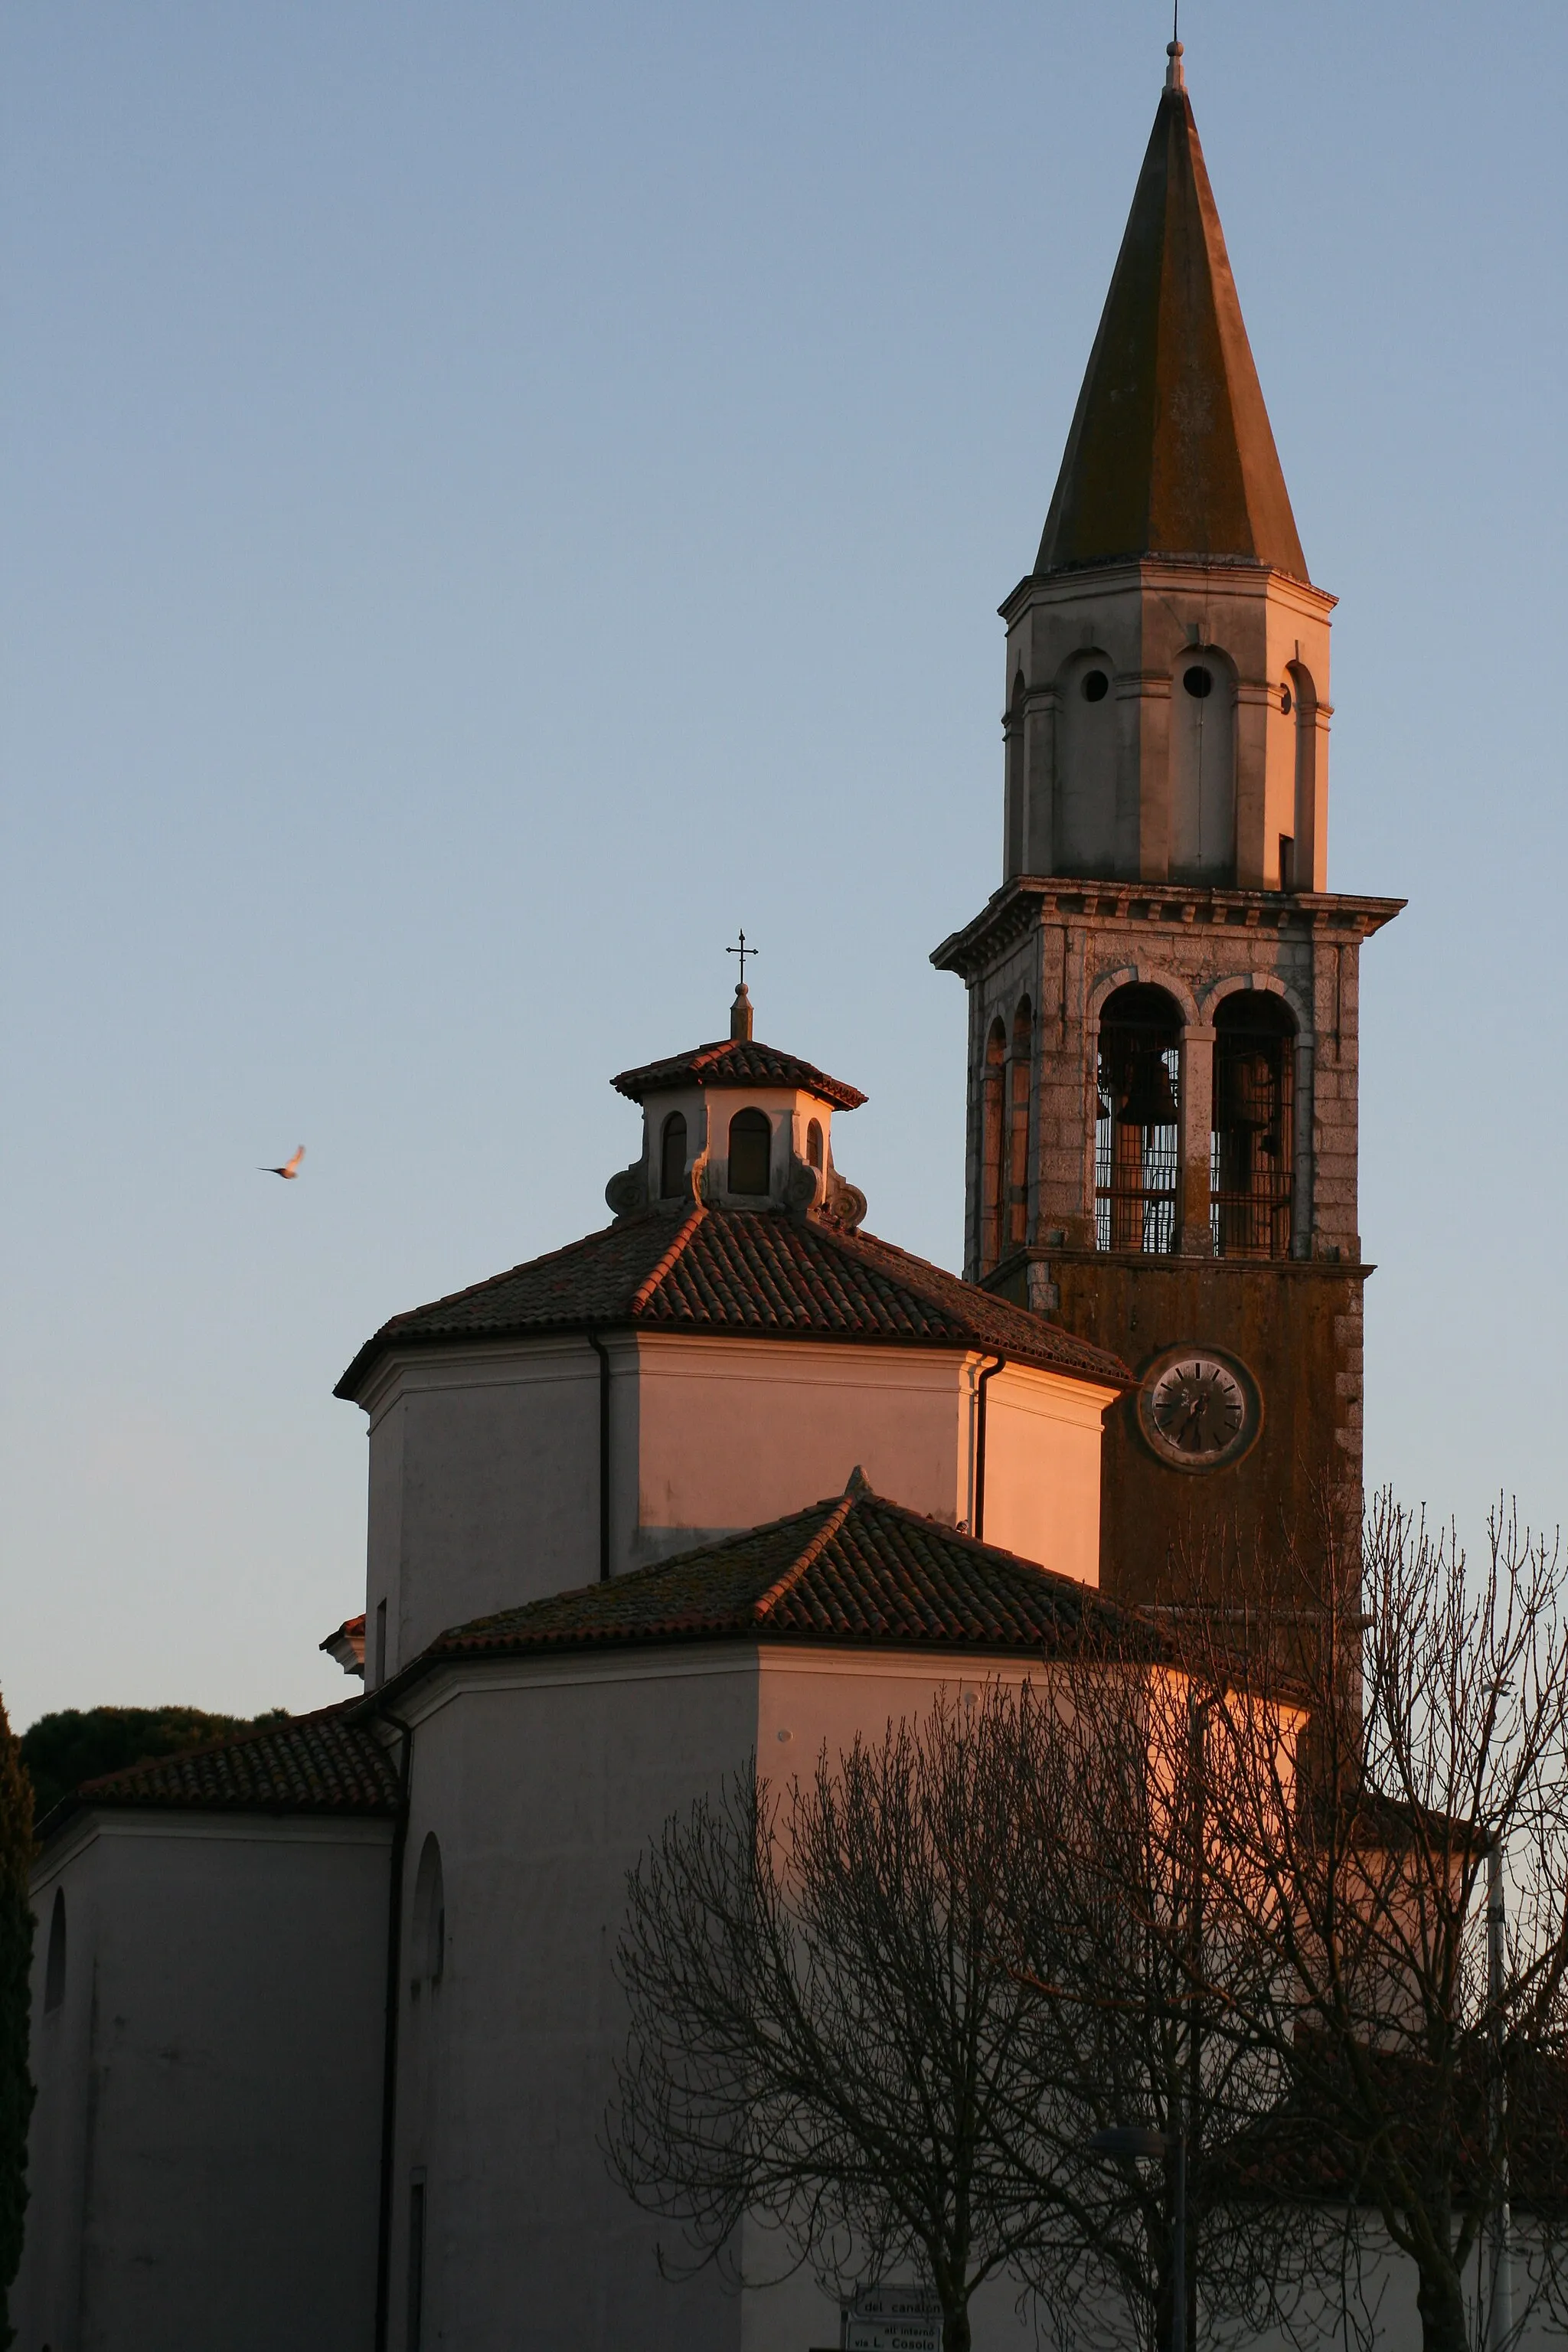 Bilde av Friuli-Venezia Giulia